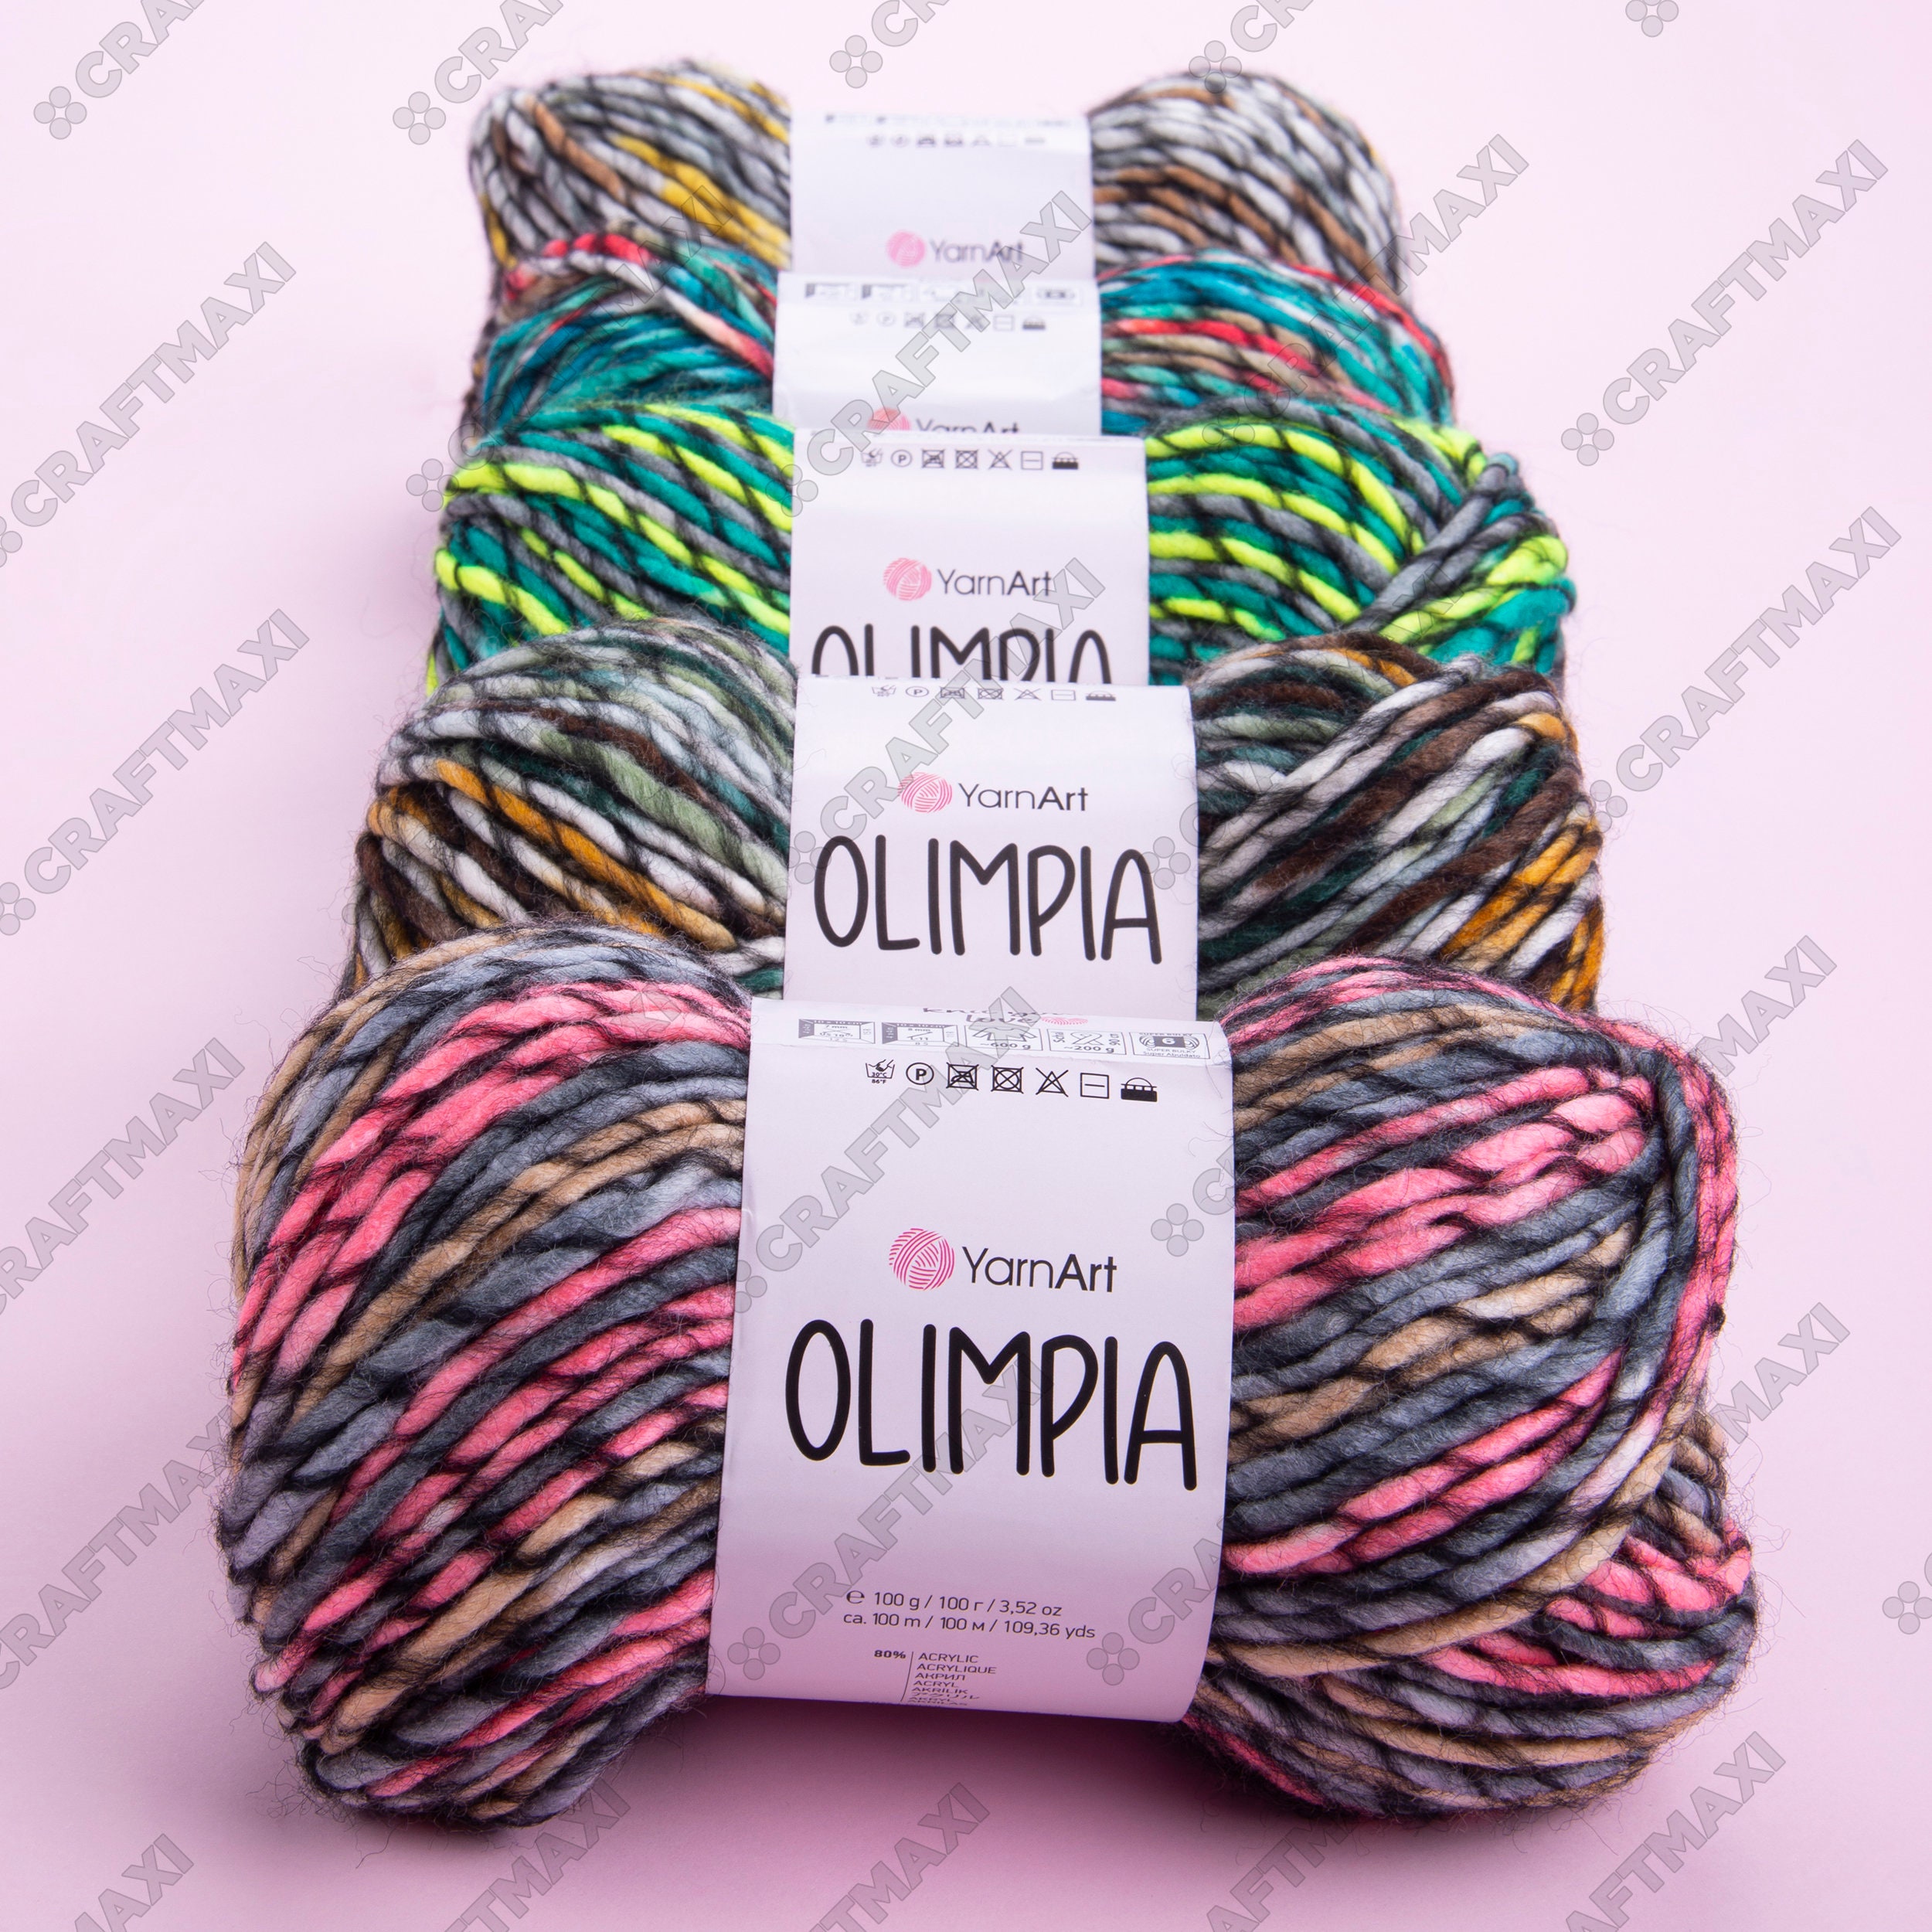 Wool Winter Yarn, Yarnart Olimpia Yarn, 20% Wool Yarn, Multicolor Knitting  Yarn, Super Bulky Yarn, Soft Thick Yarn, Cardigan Yarn, 100g,100m 